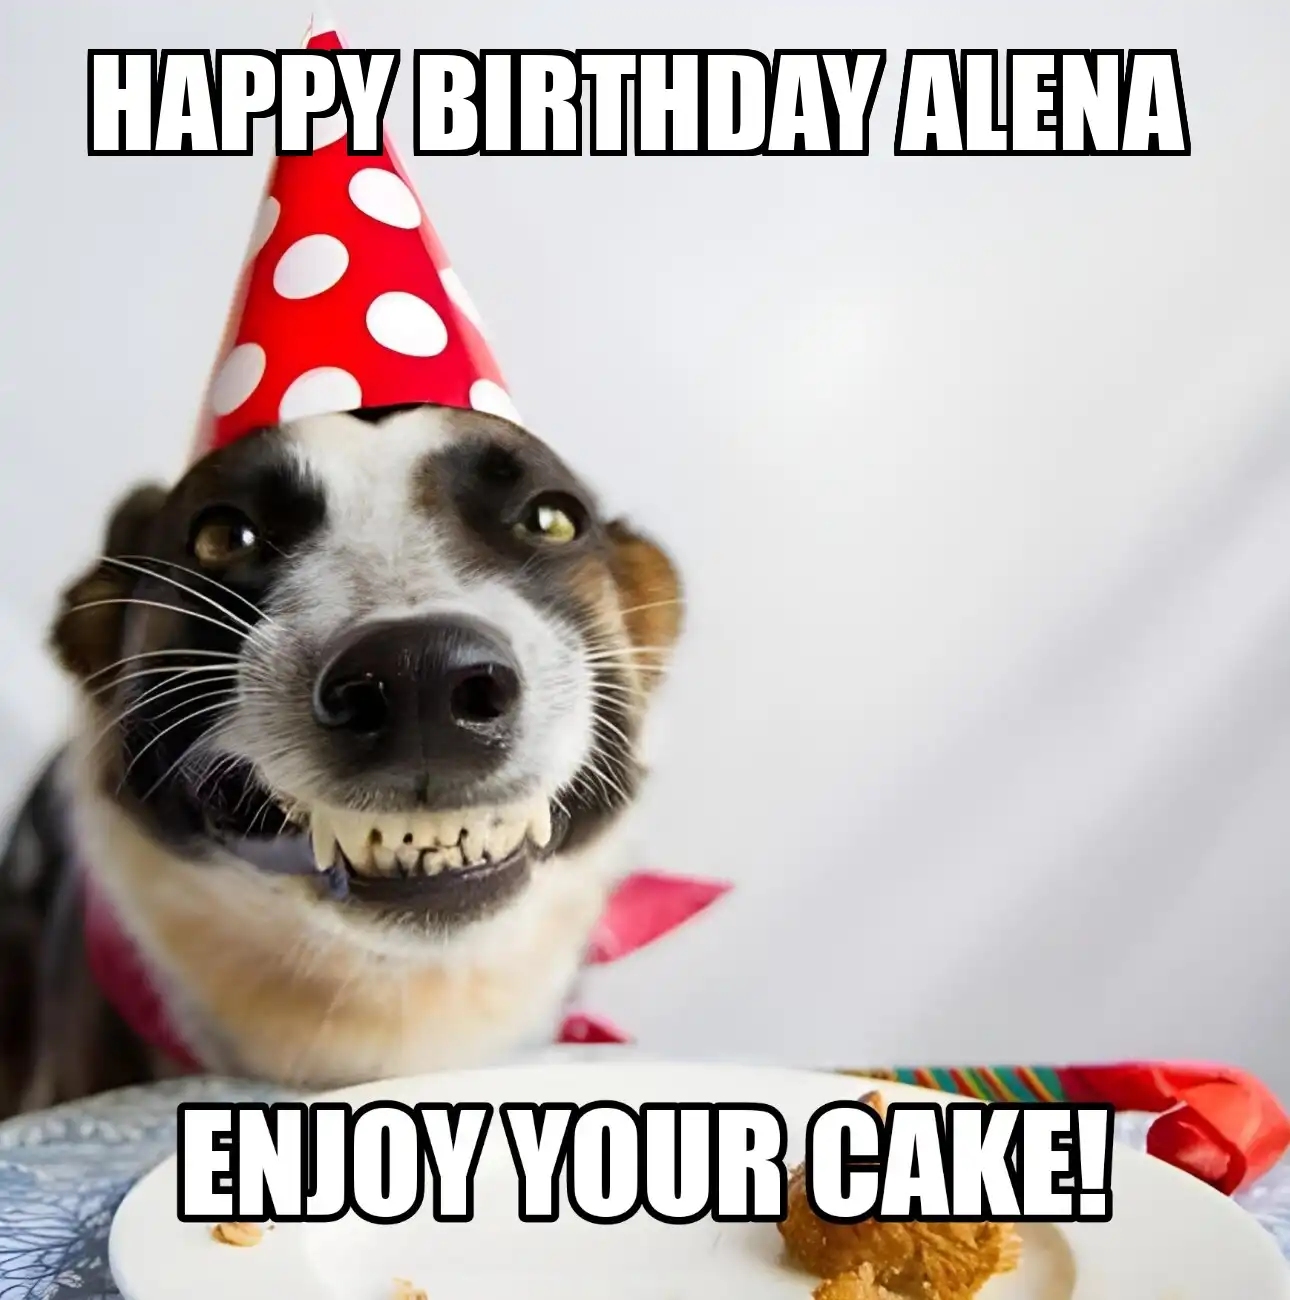 Happy Birthday Alena Enjoy Your Cake Dog Meme